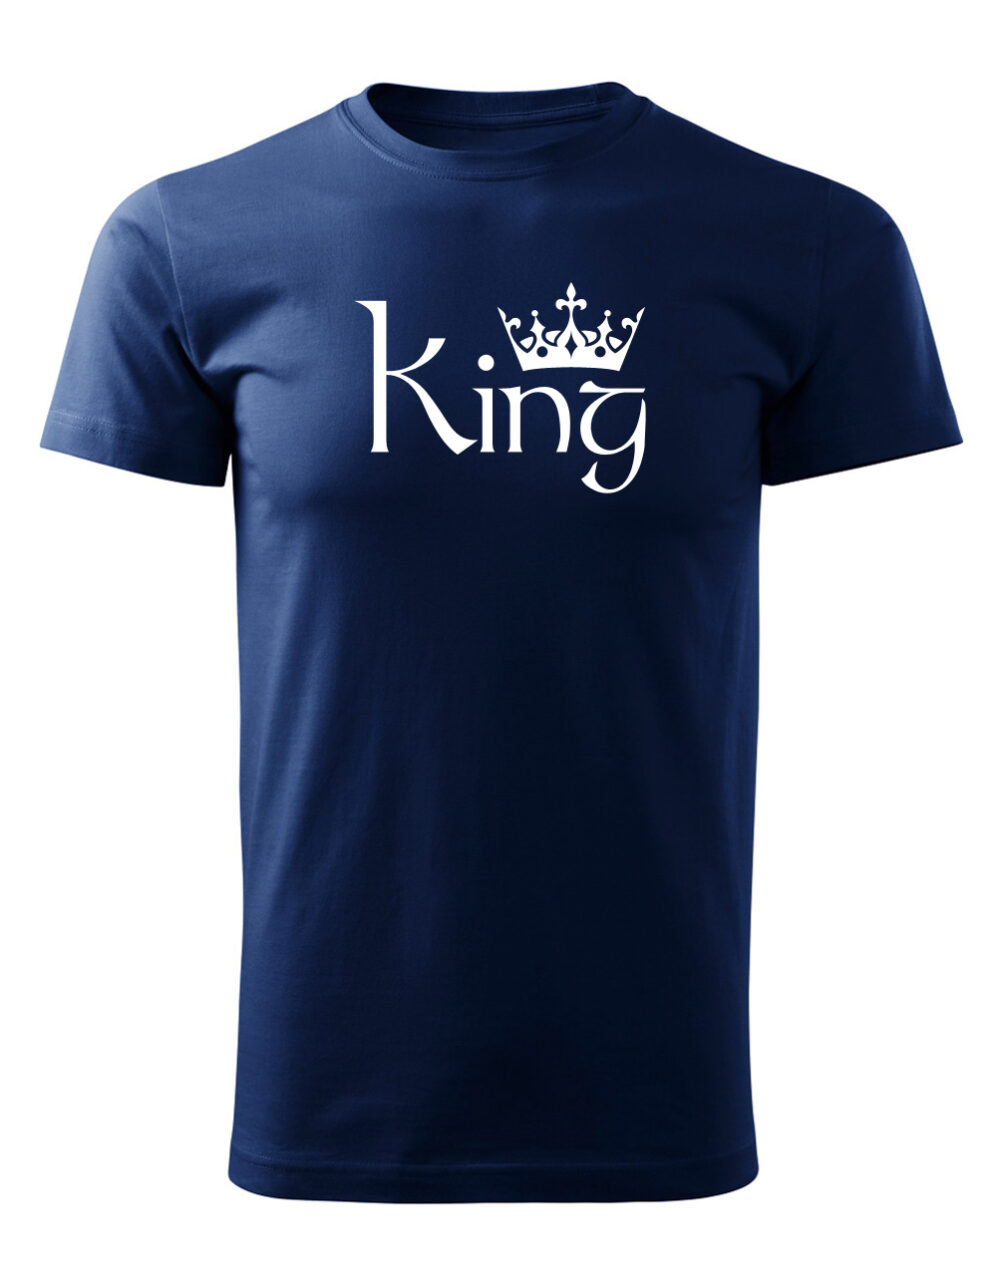 Pásnké tričko s potiskem King námořnická modrá